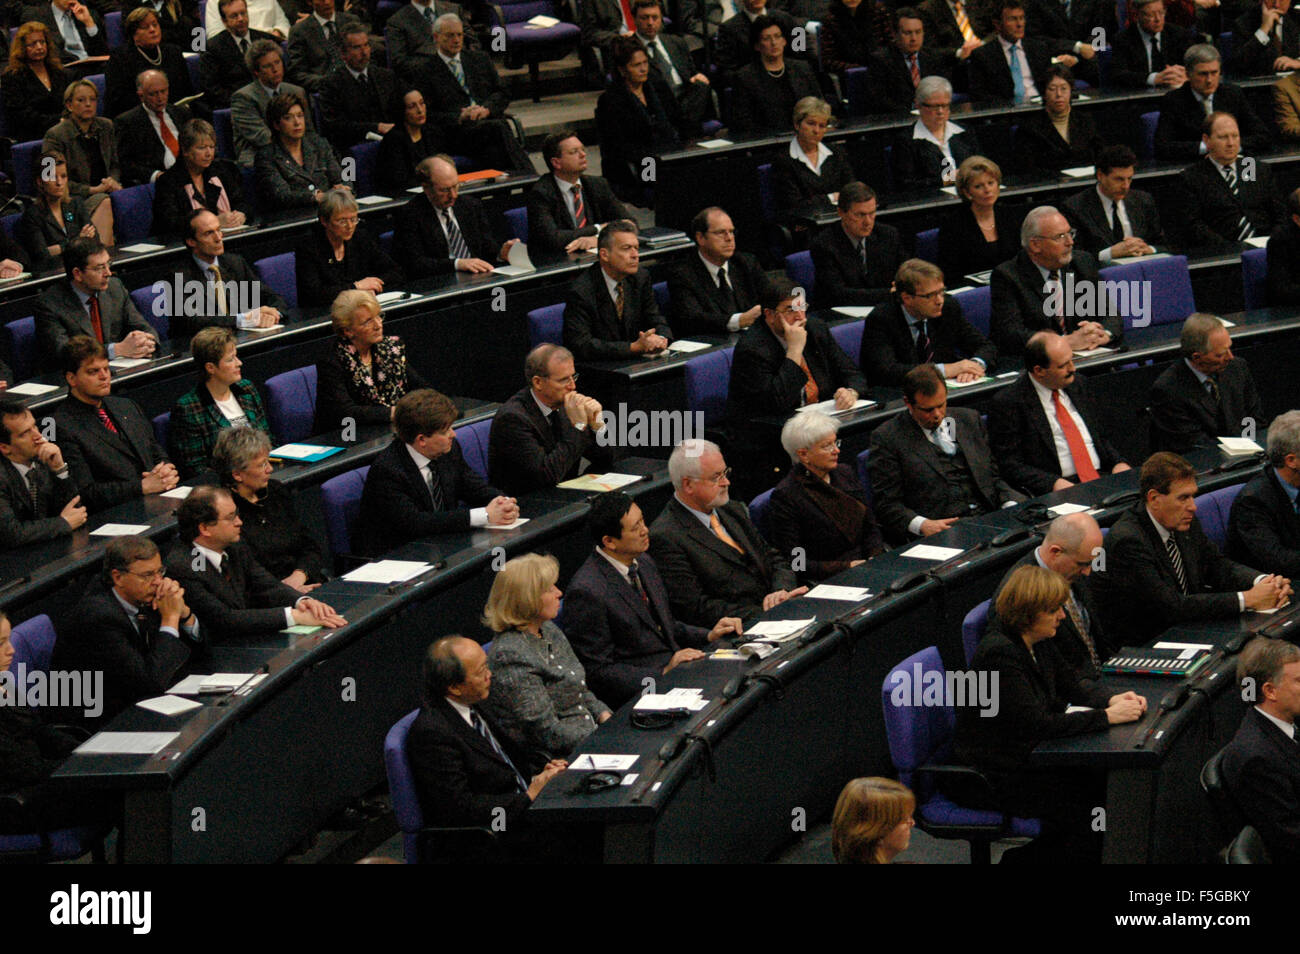 Staatsakt im Deutschen Bundestag fuer die Flutopfer in Suedostasien am 20. Januar 2005 im Reichstag / Reichstagsgebaeude, Berlin Stock Photo